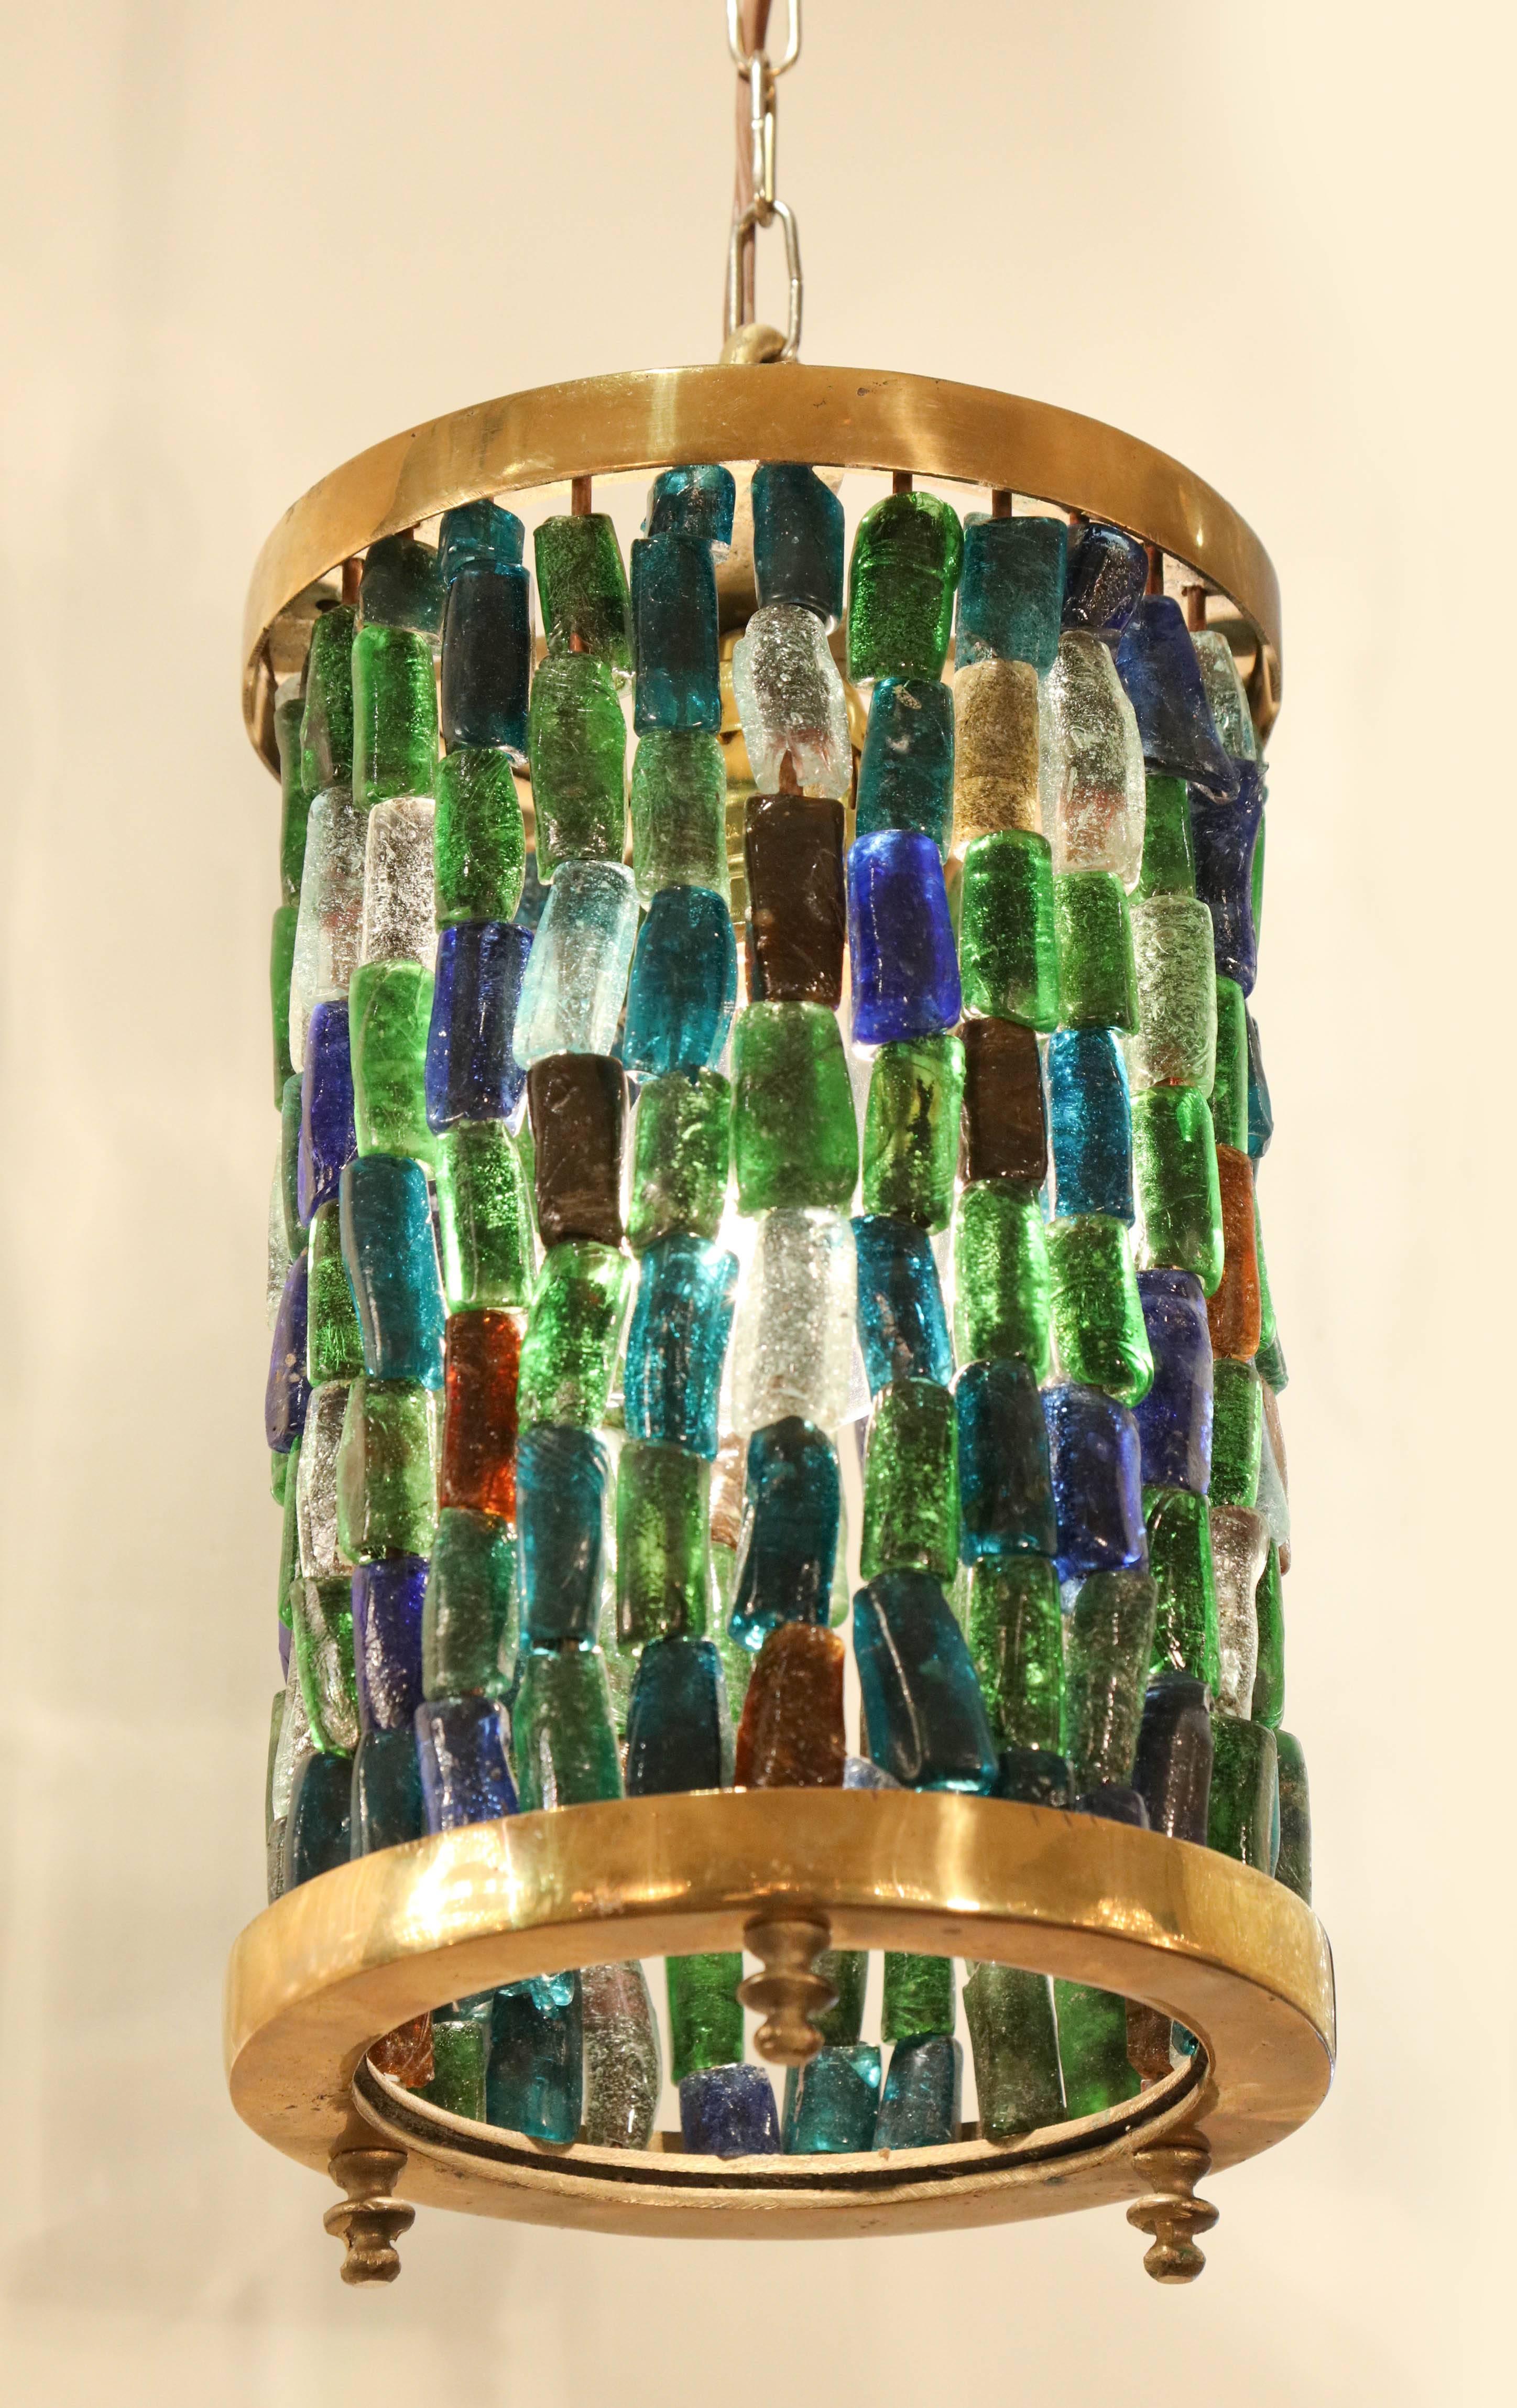 Eine hübsche kleine Laterne, bestehend aus einem Messingzylinder und kleinen farbigen Glasstücken in atemberaubenden Blau-, Grün-, Bernstein- und Klarschattierungen.